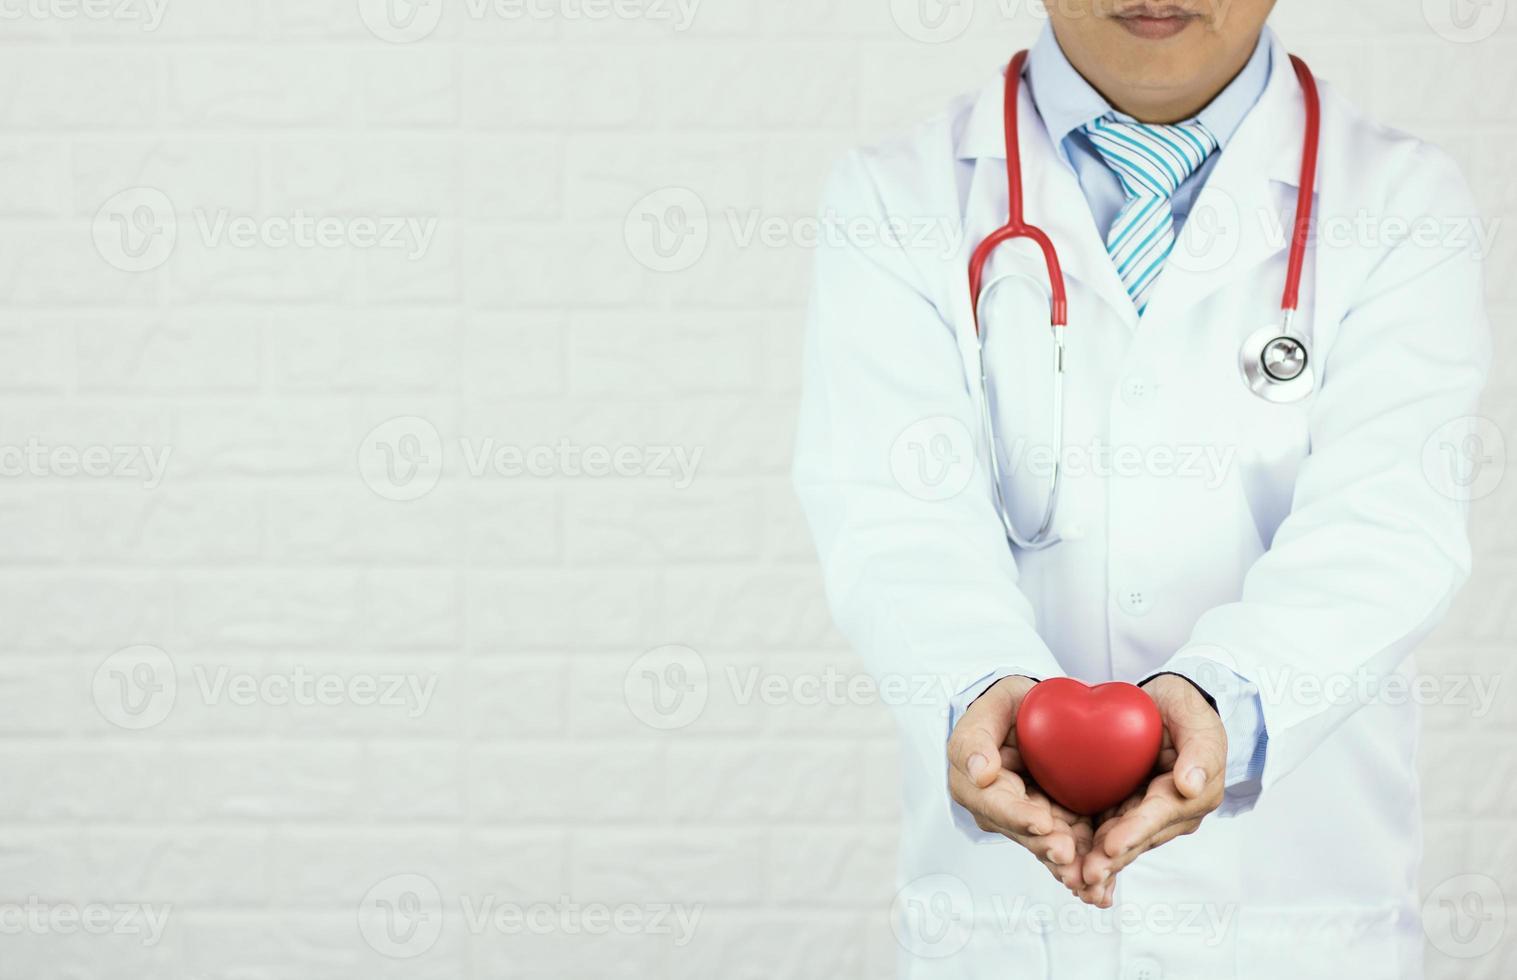 docteur, tenue, coeur rouge, blanc, mur brique, fond photo